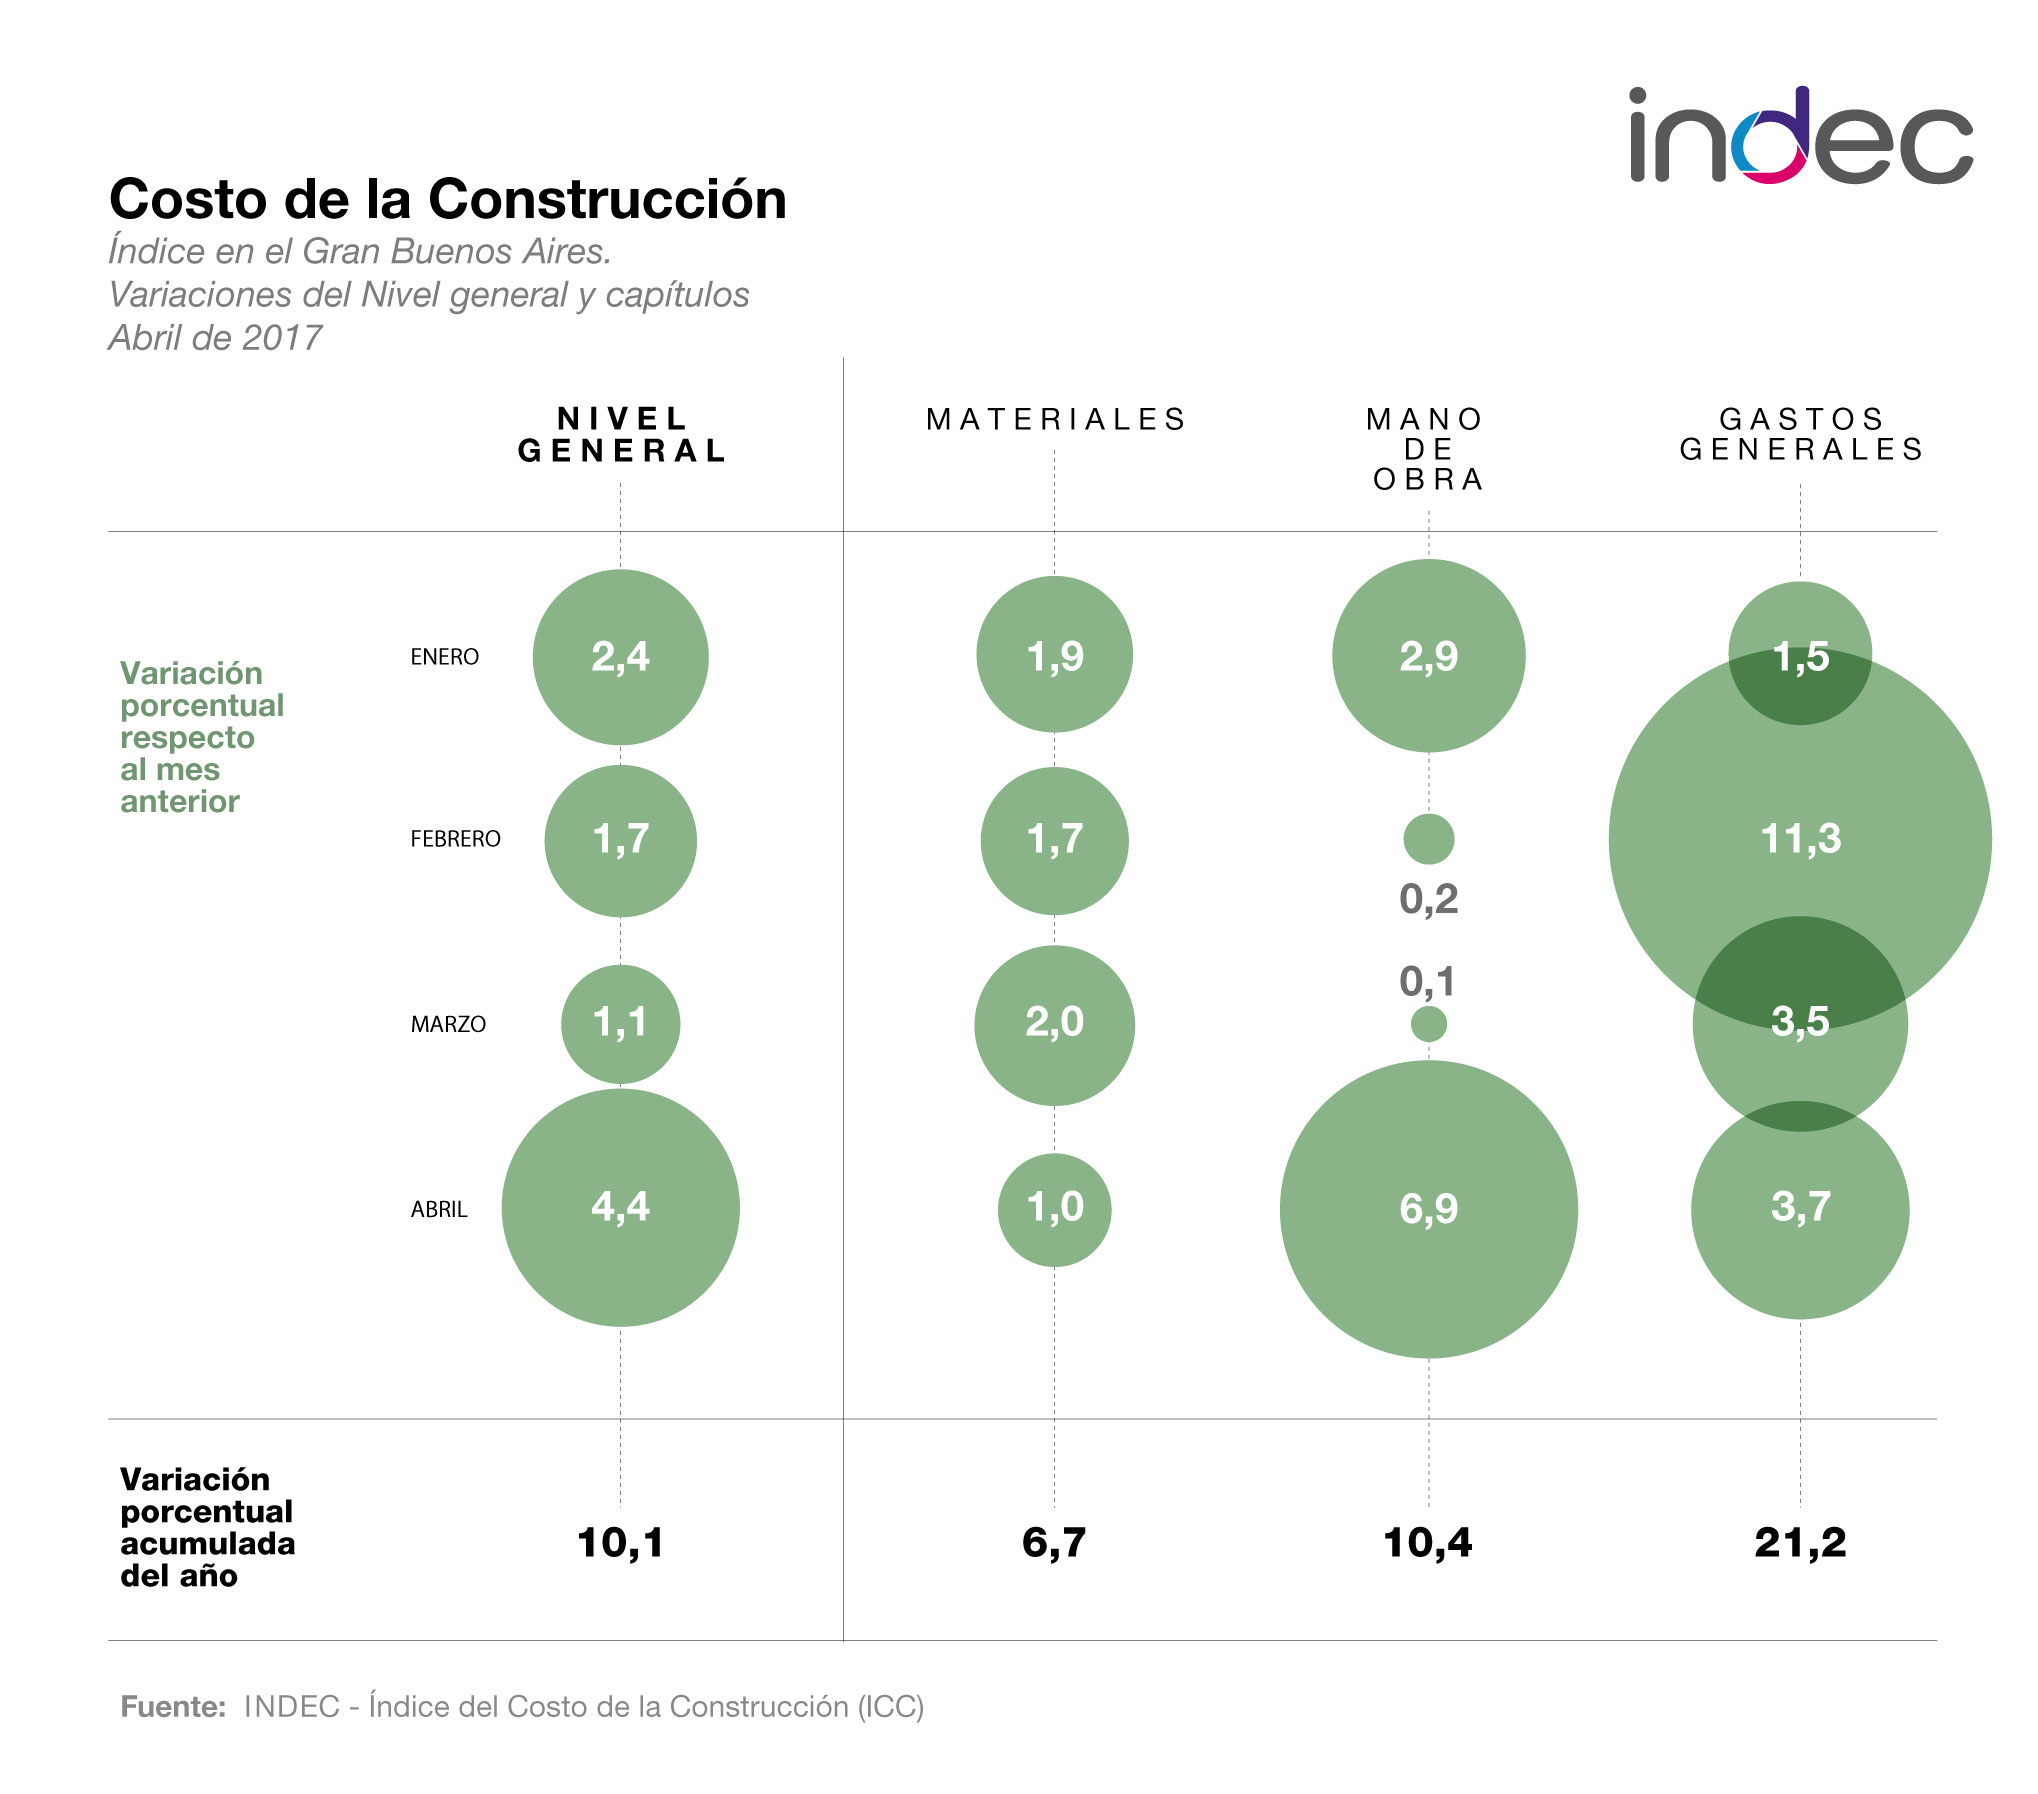 Índice del Costo de la Construcción en el Gran Buenos Aires. Variaciones del Nivel  general y capítulos. Abril de 2017.